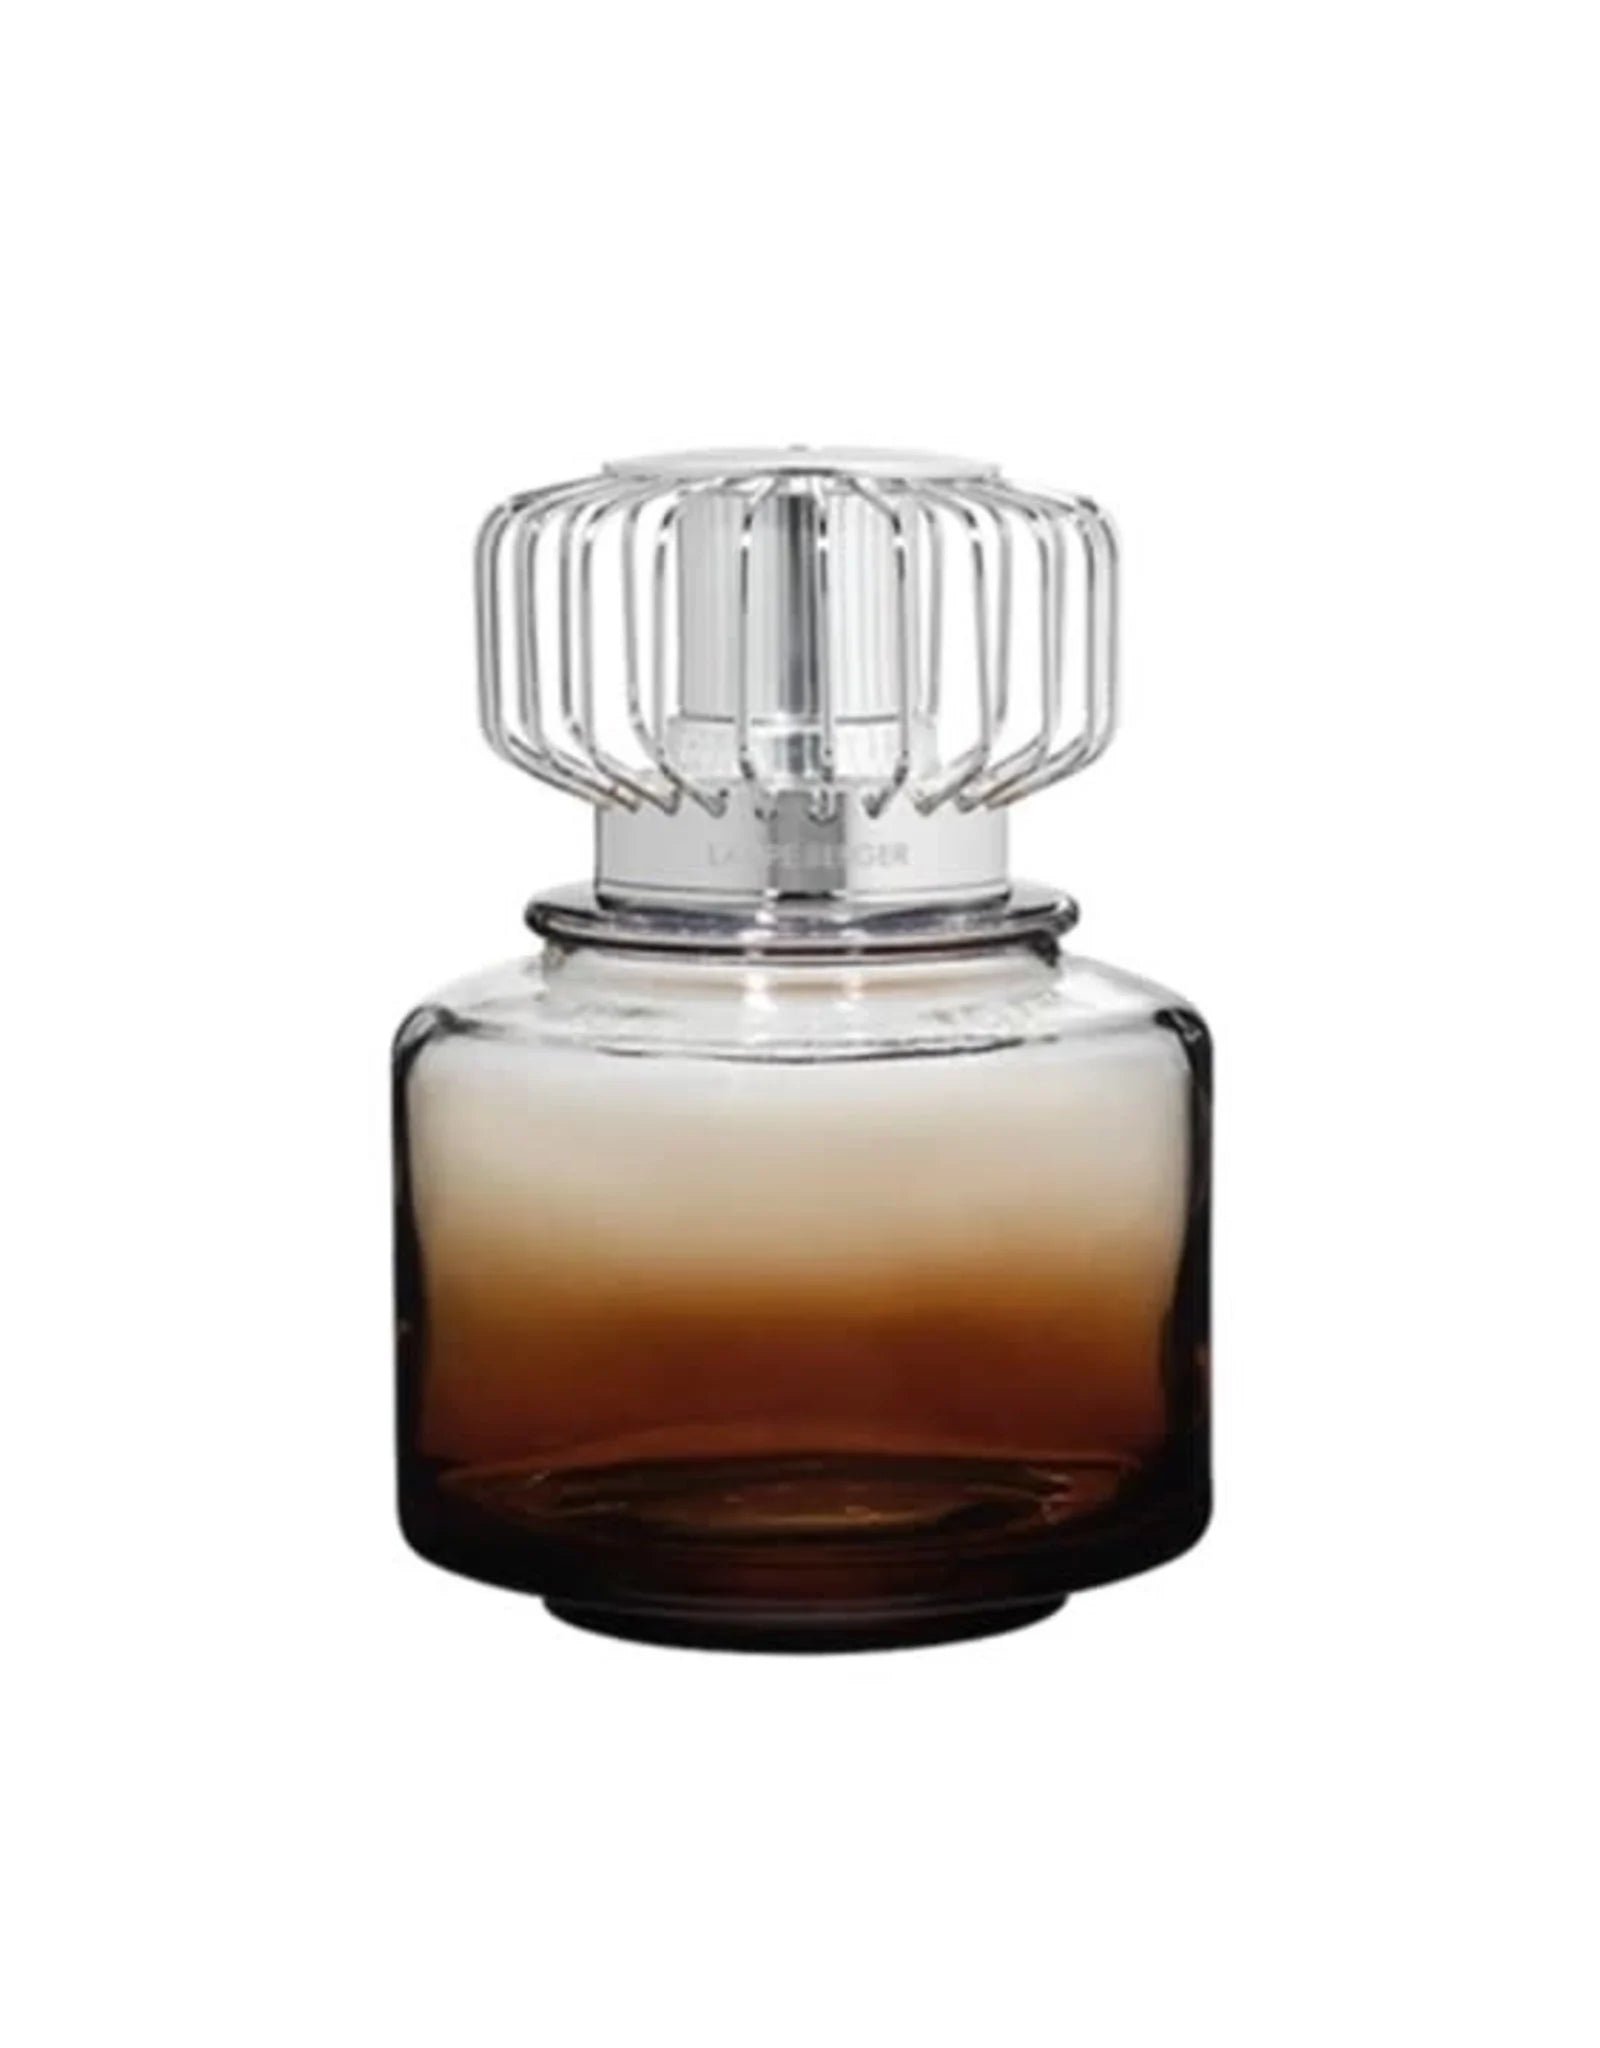 Lampe Berger Land – Terre de Sienne    - Maison Berger Paris - Parfums d'ambiance - 